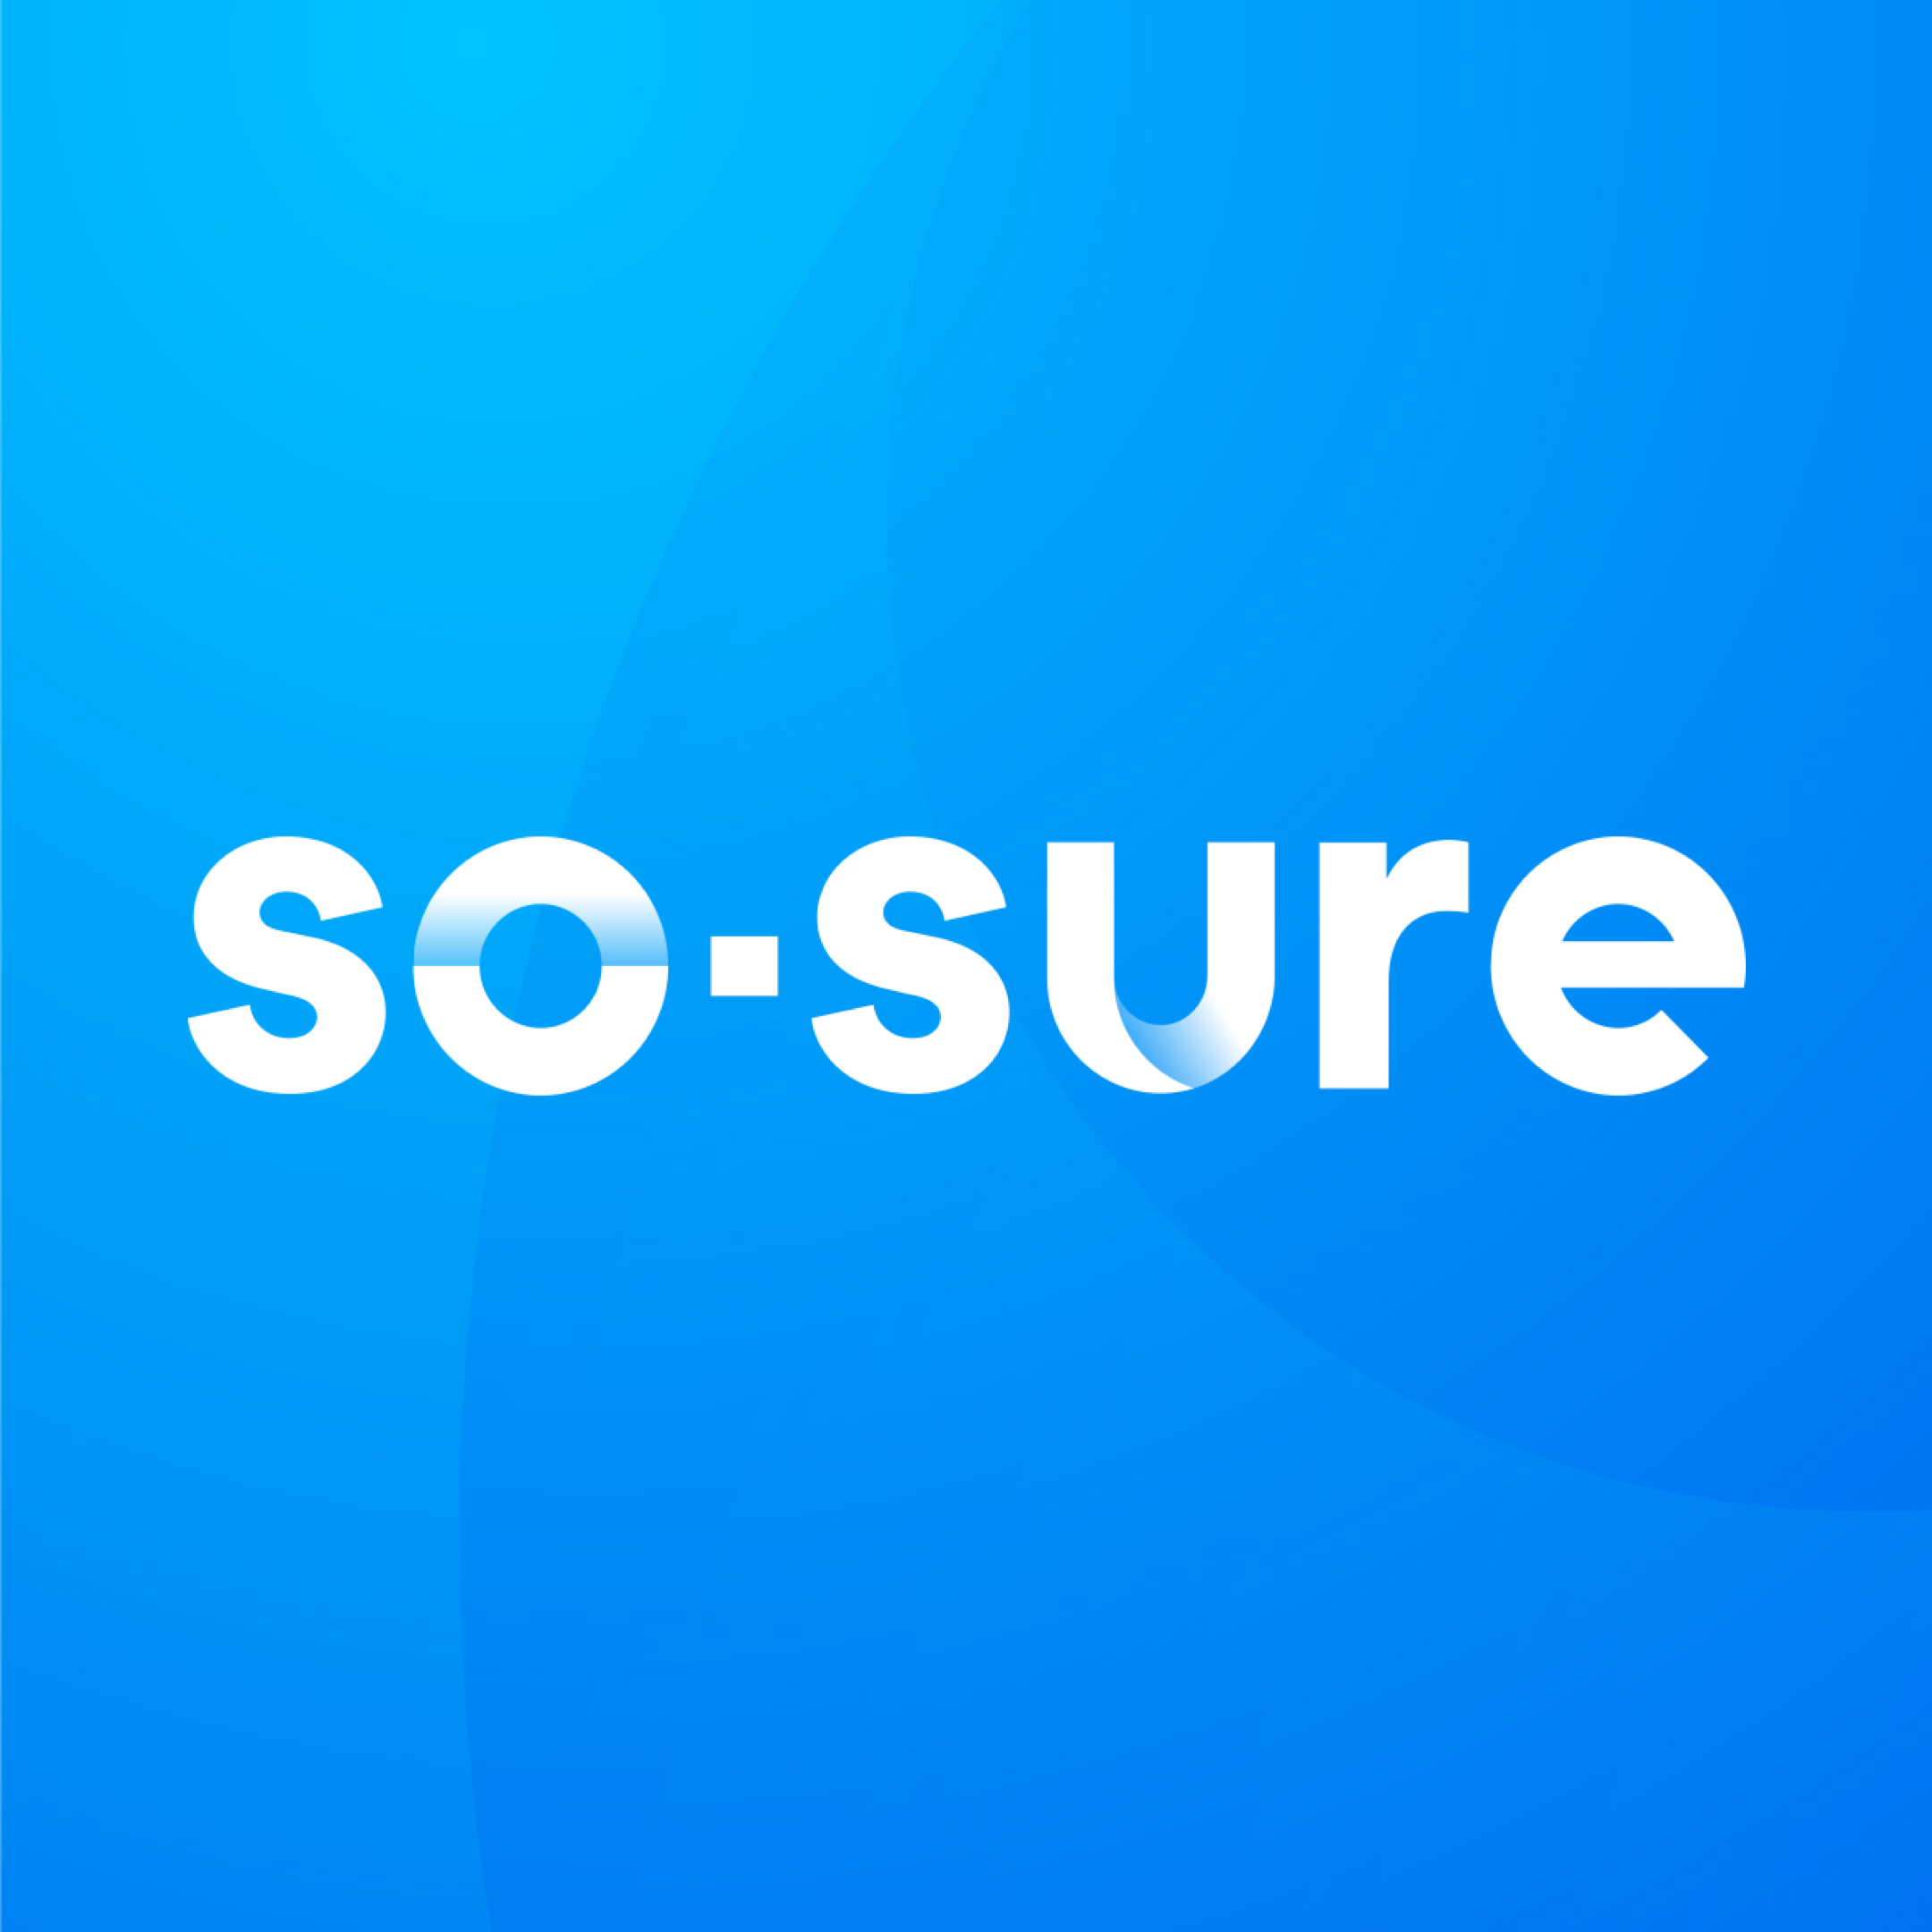 so-sure's logo